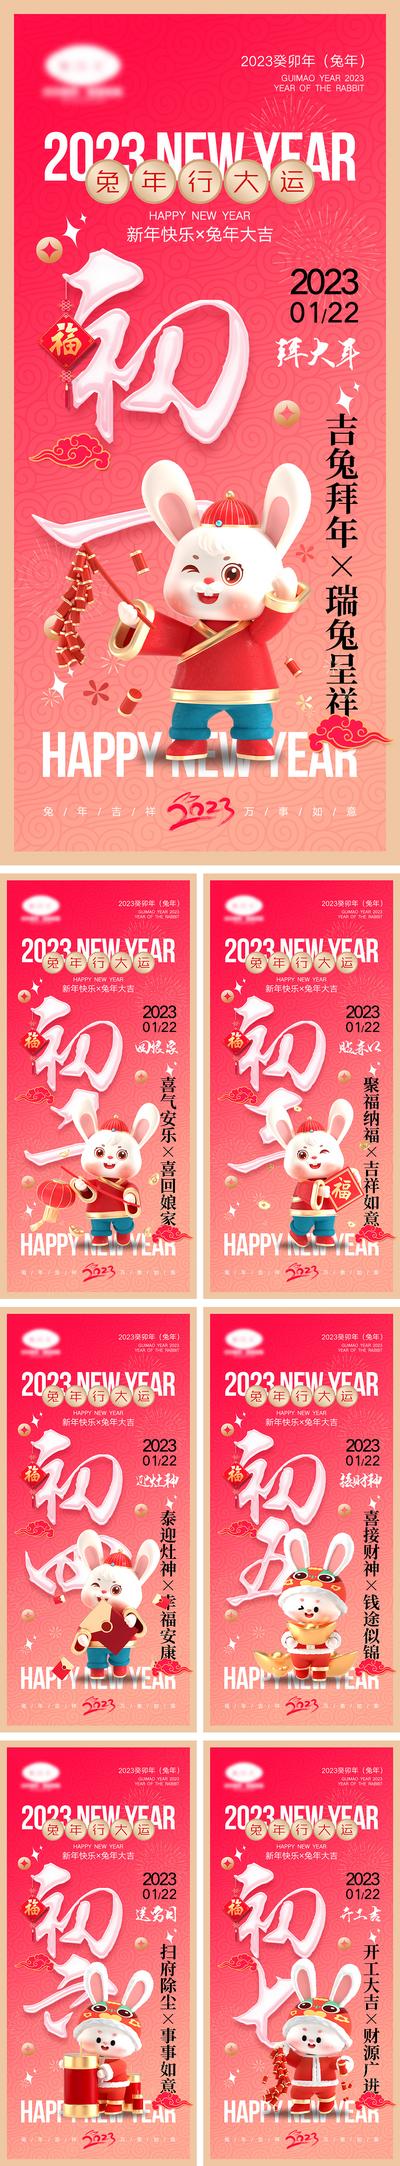 南门网 海报 节日 兔年 2023 元旦 兔子 春节 除夕 小年 初一到初七 公历节日